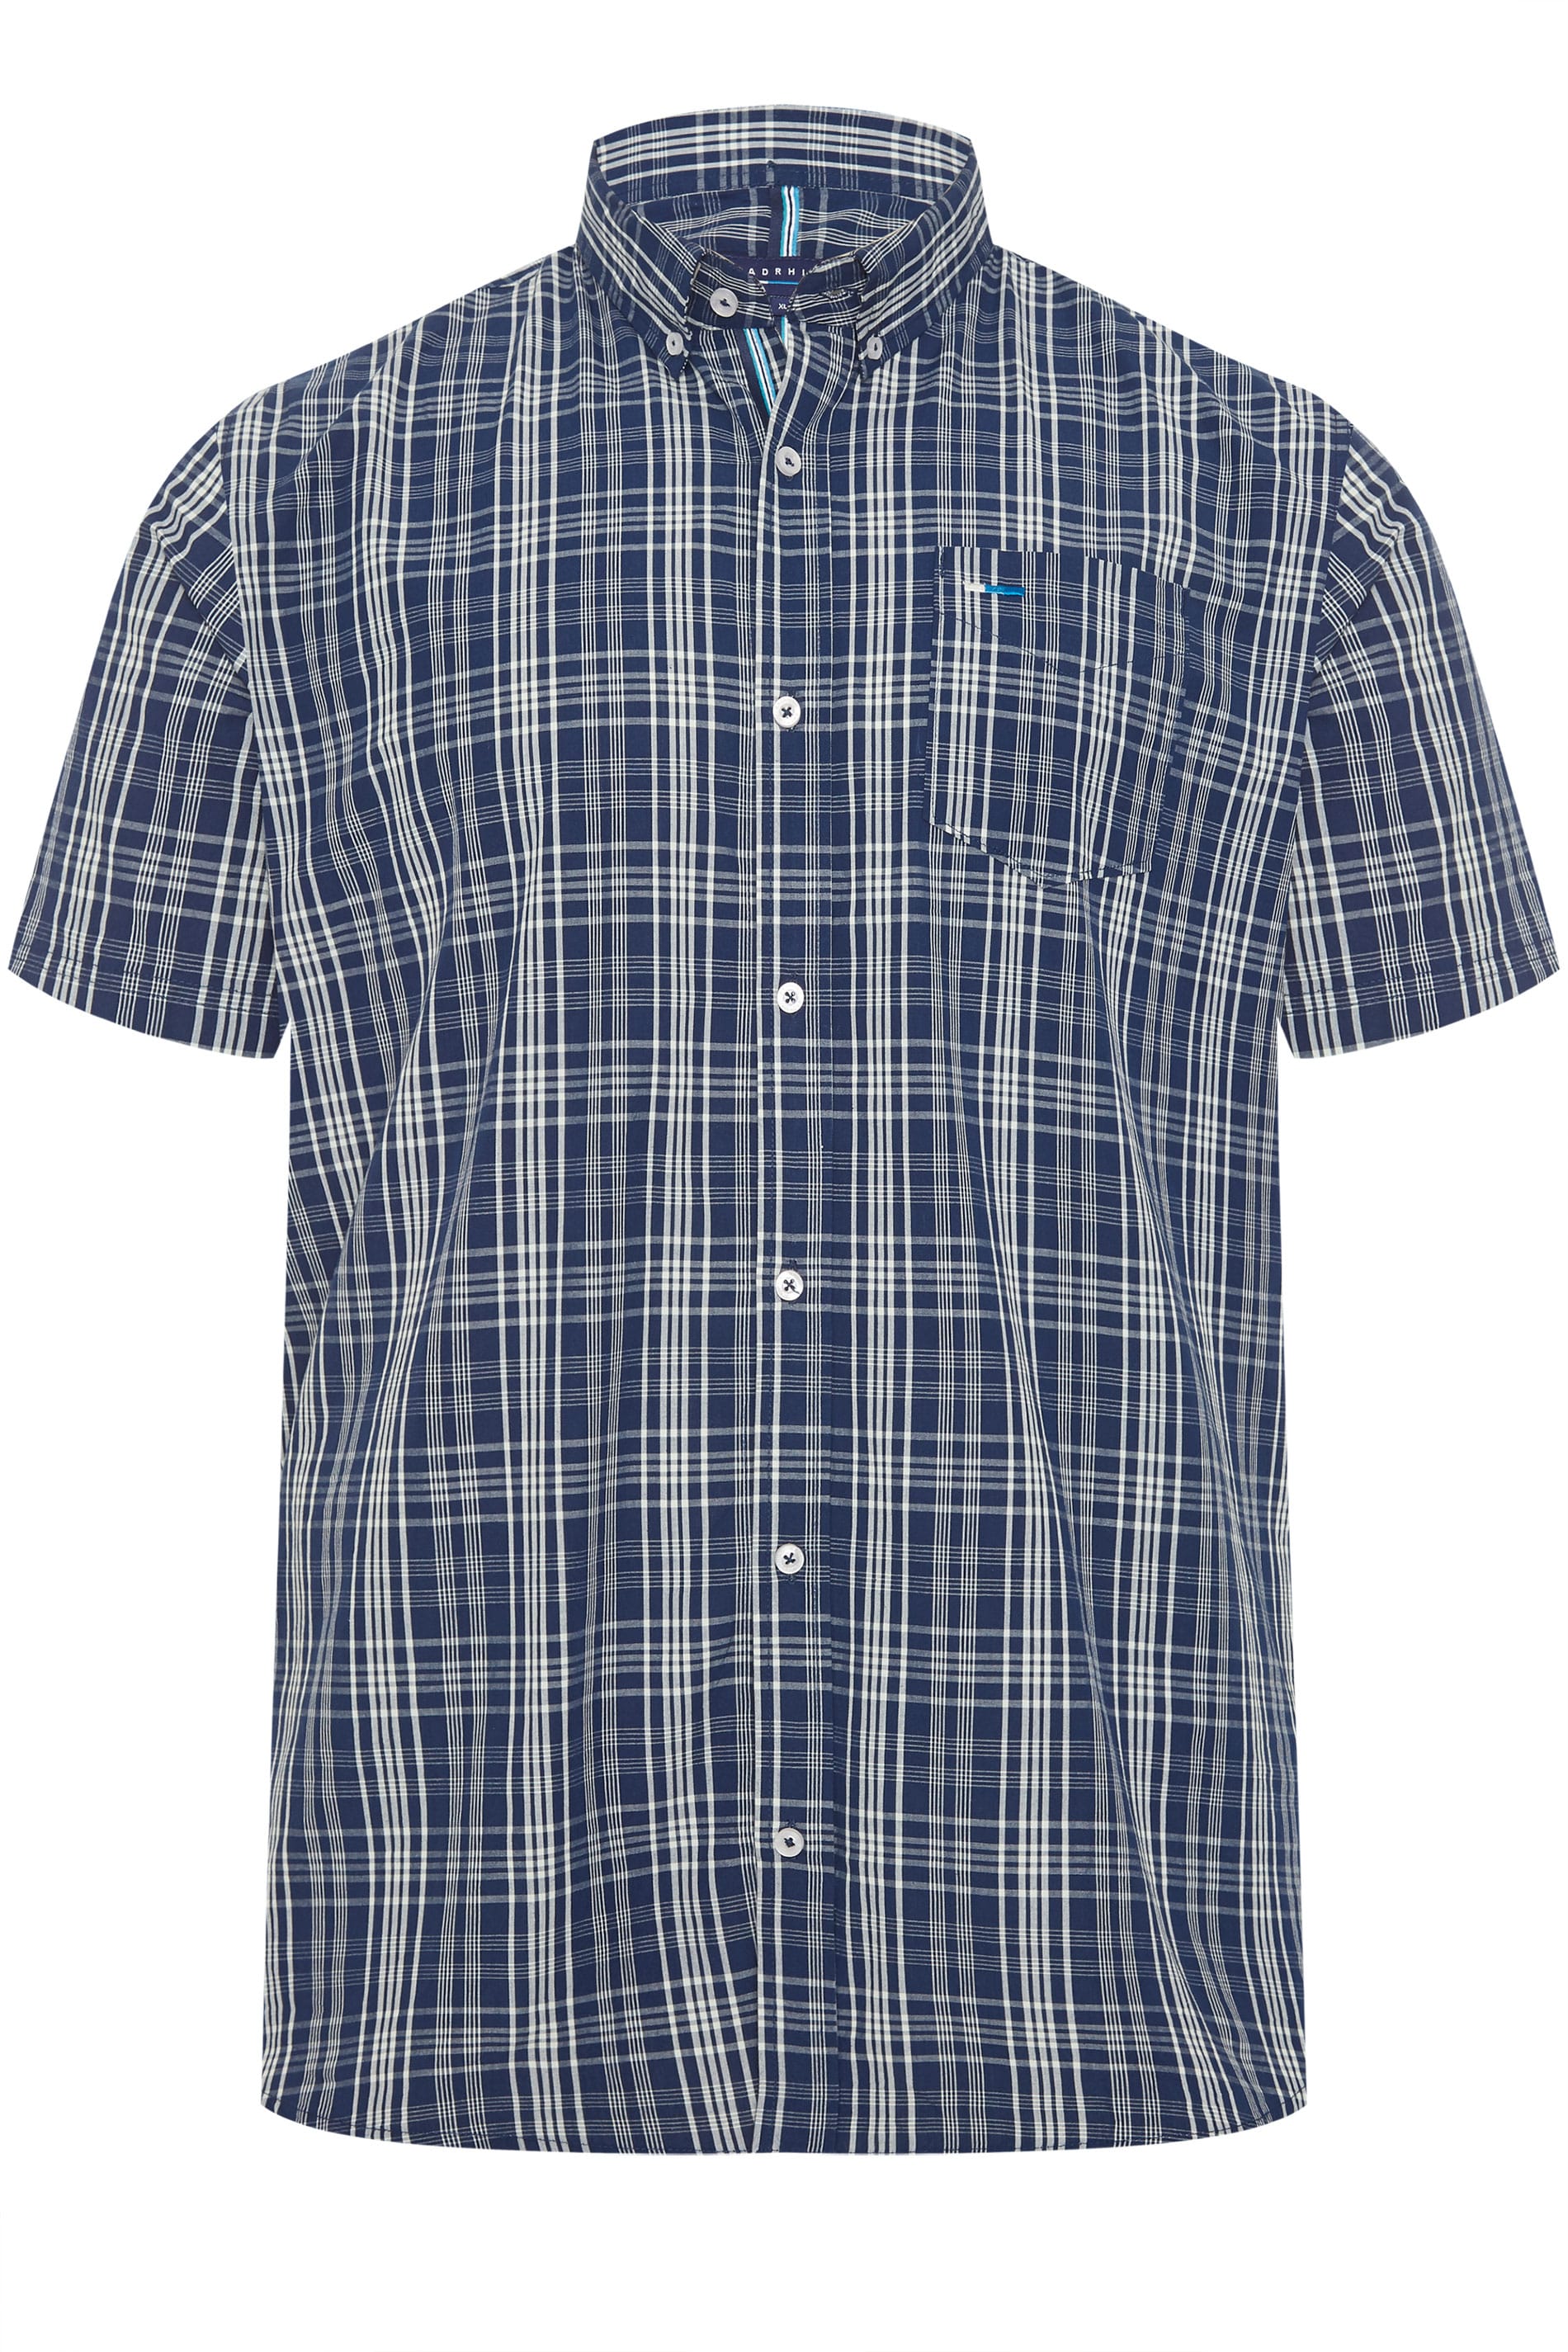 BadRhino Blue Grid Check Shirt 1